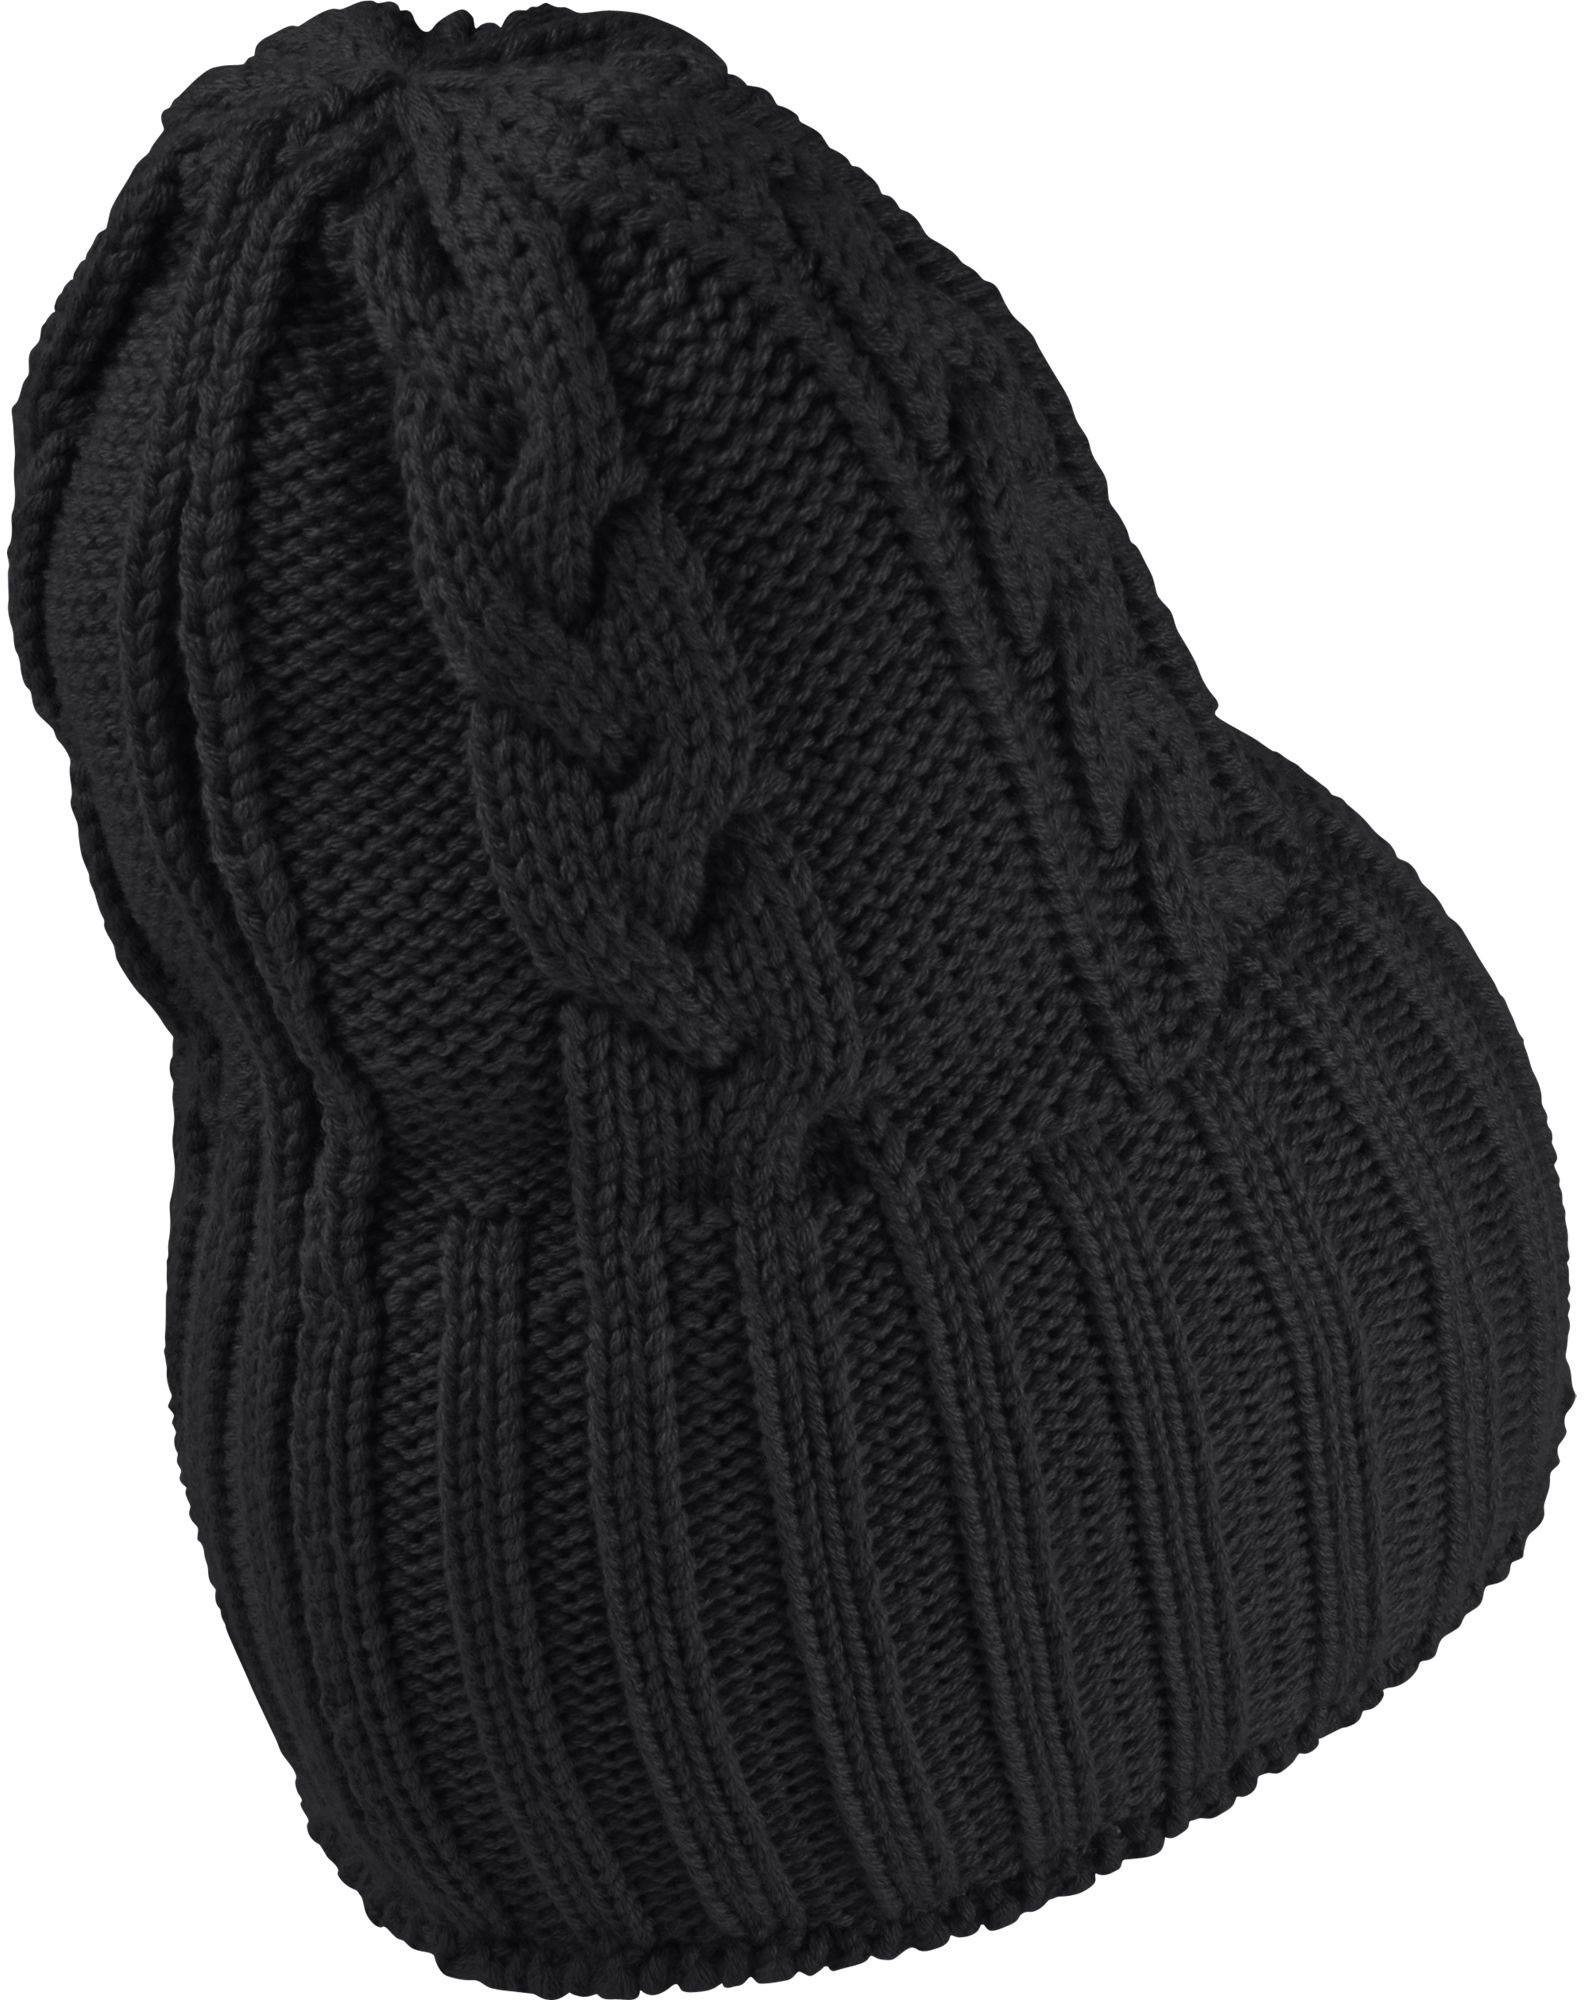 Women's Knit Hat